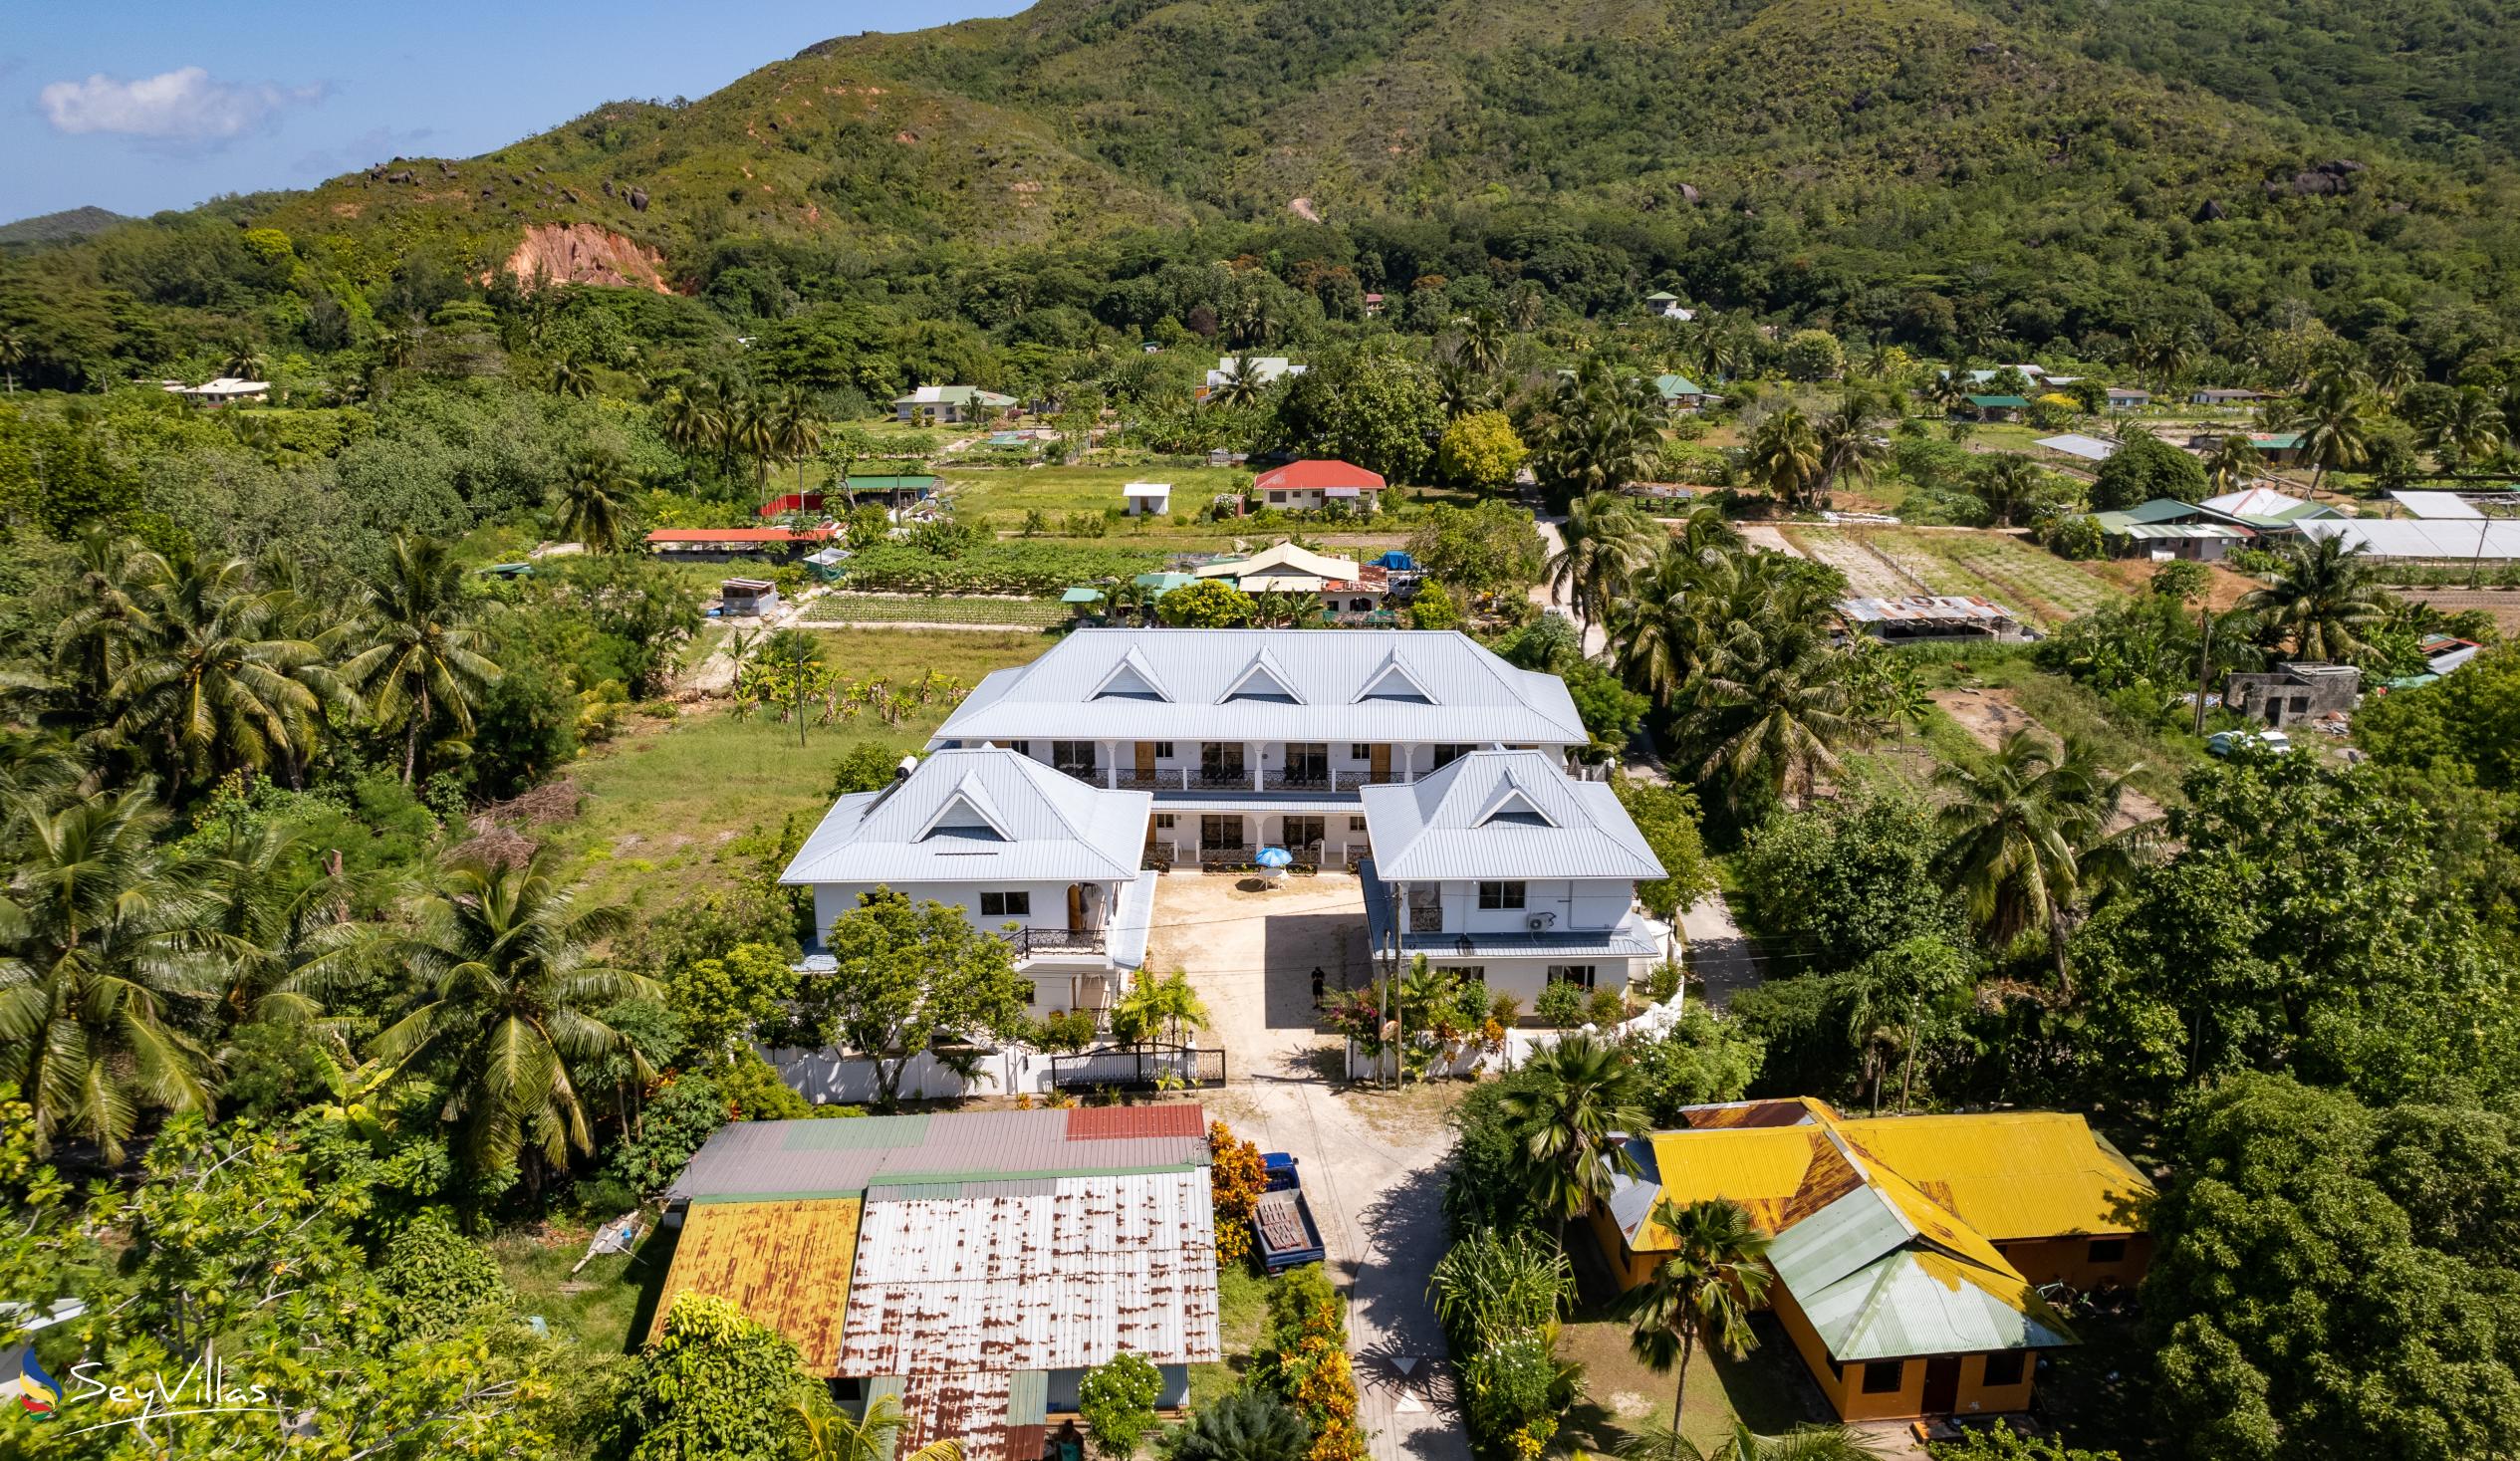 Foto 15: Casadani Luxury Guest House - Aussenbereich - Praslin (Seychellen)